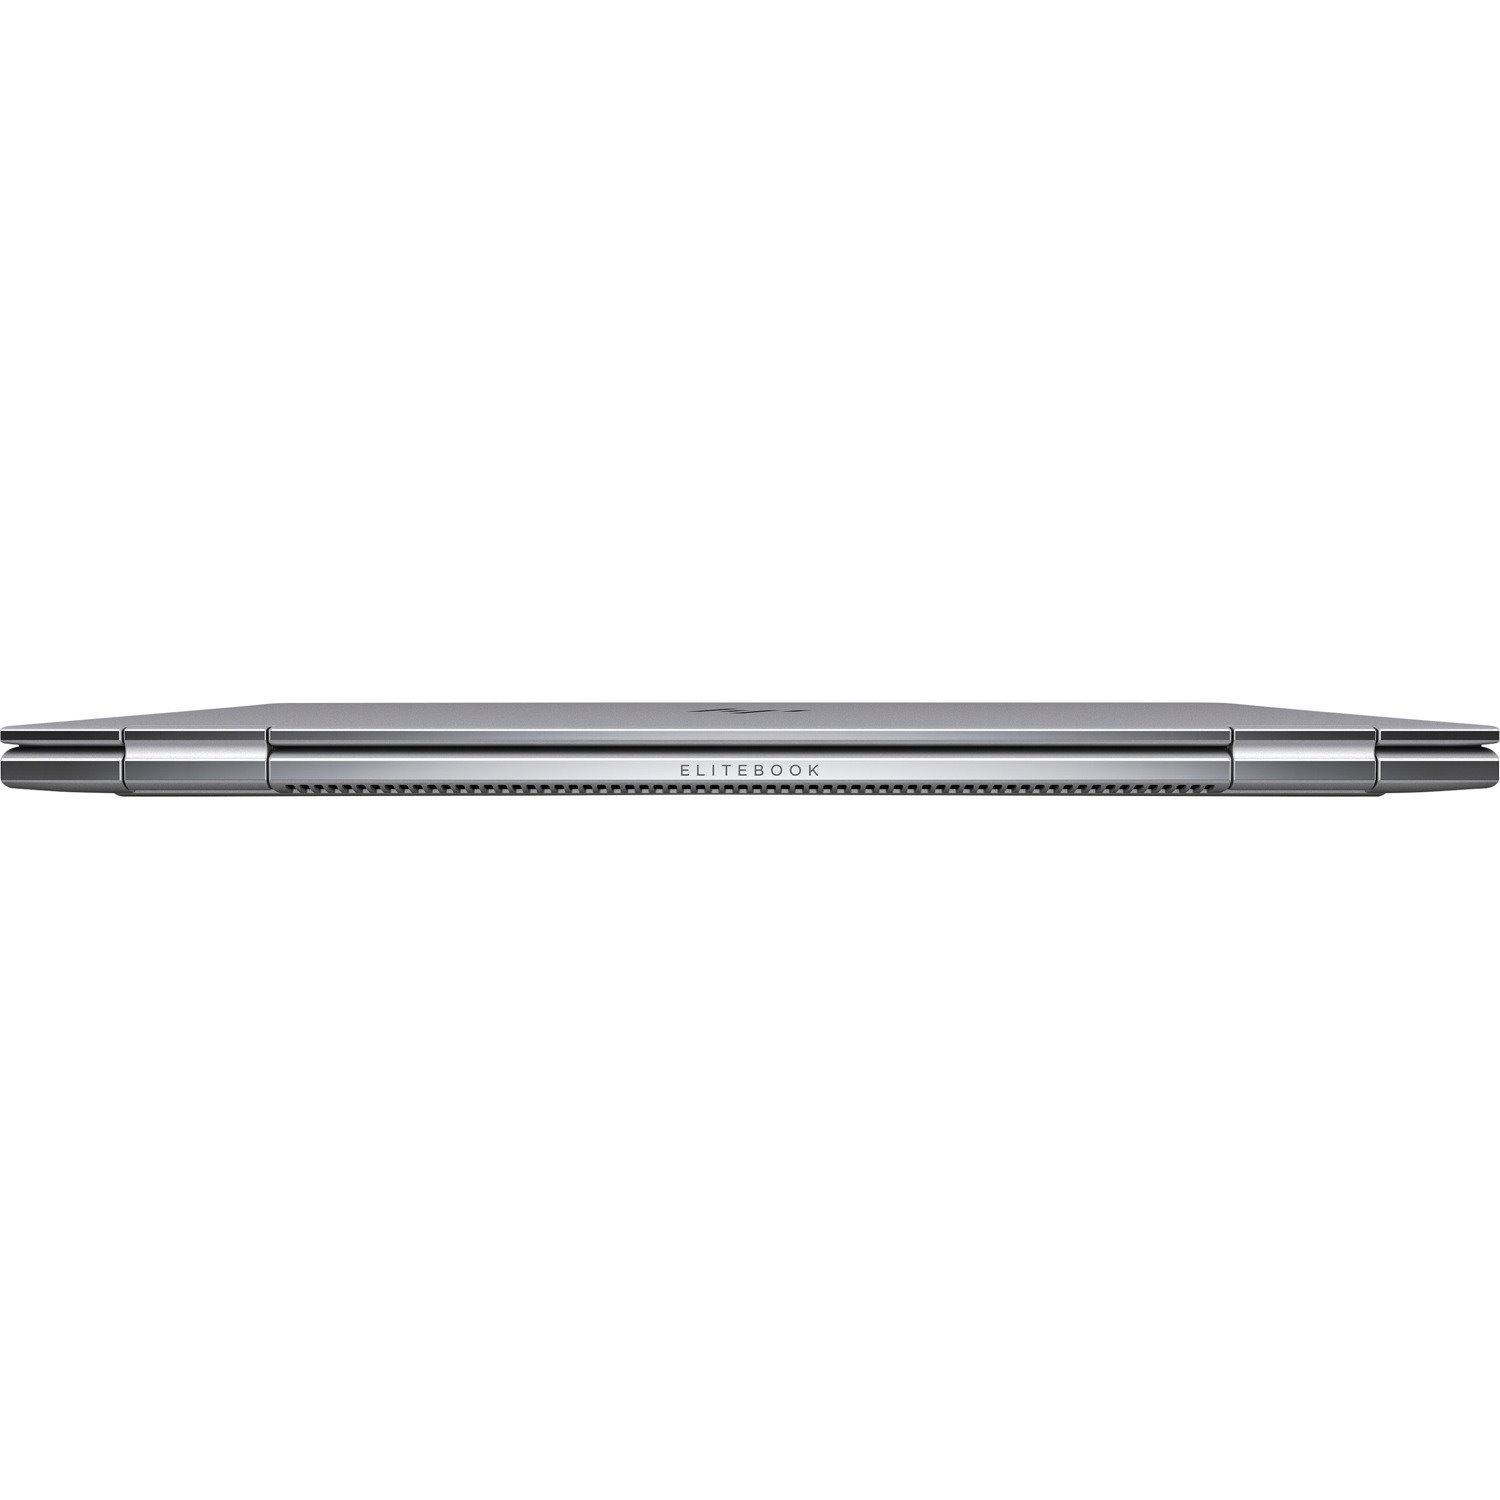 HP EliteBook x360 1030 G4 13.3" Touchscreen Convertible 2 in 1 Notebook - 1920 x 1080 - Intel Core i5 8th Gen i5-8365U Quad-core (4 Core) 1.60 GHz - 8 GB Total RAM - 256 GB SSD